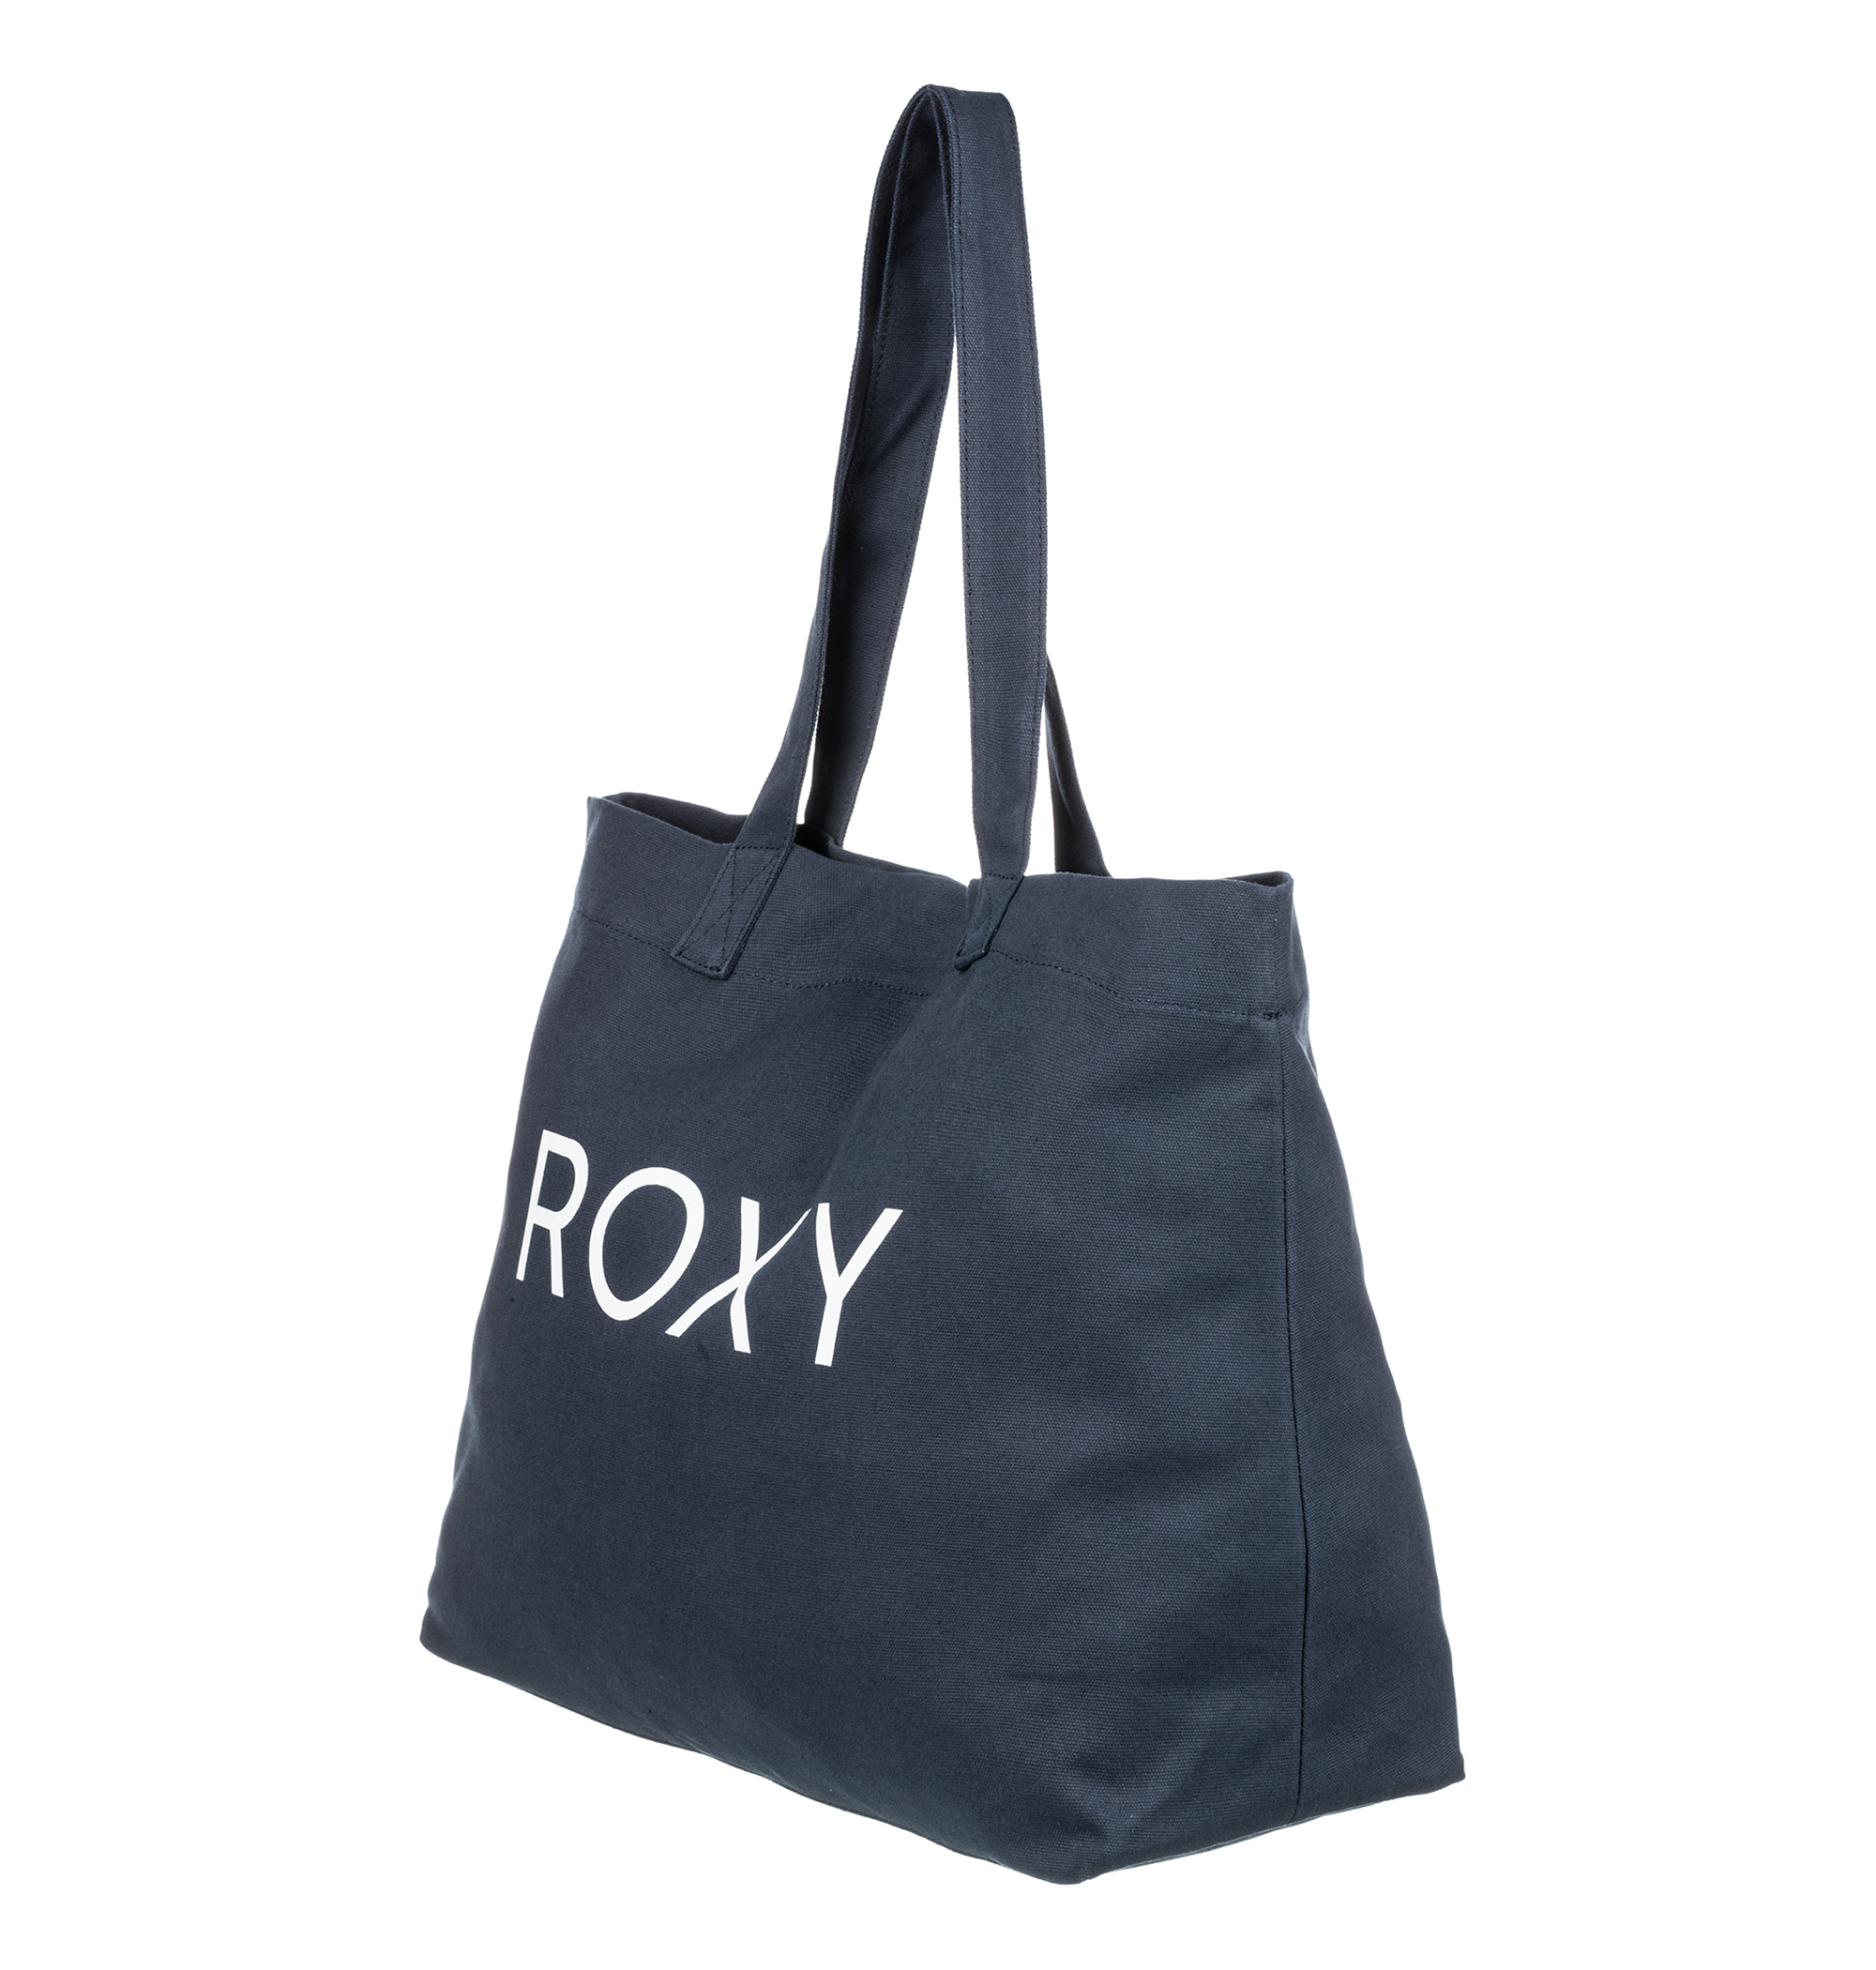 ＜Roxy＞GO FOR IT キャンバス地にブランドロゴのアクセントを施したトートバッグ